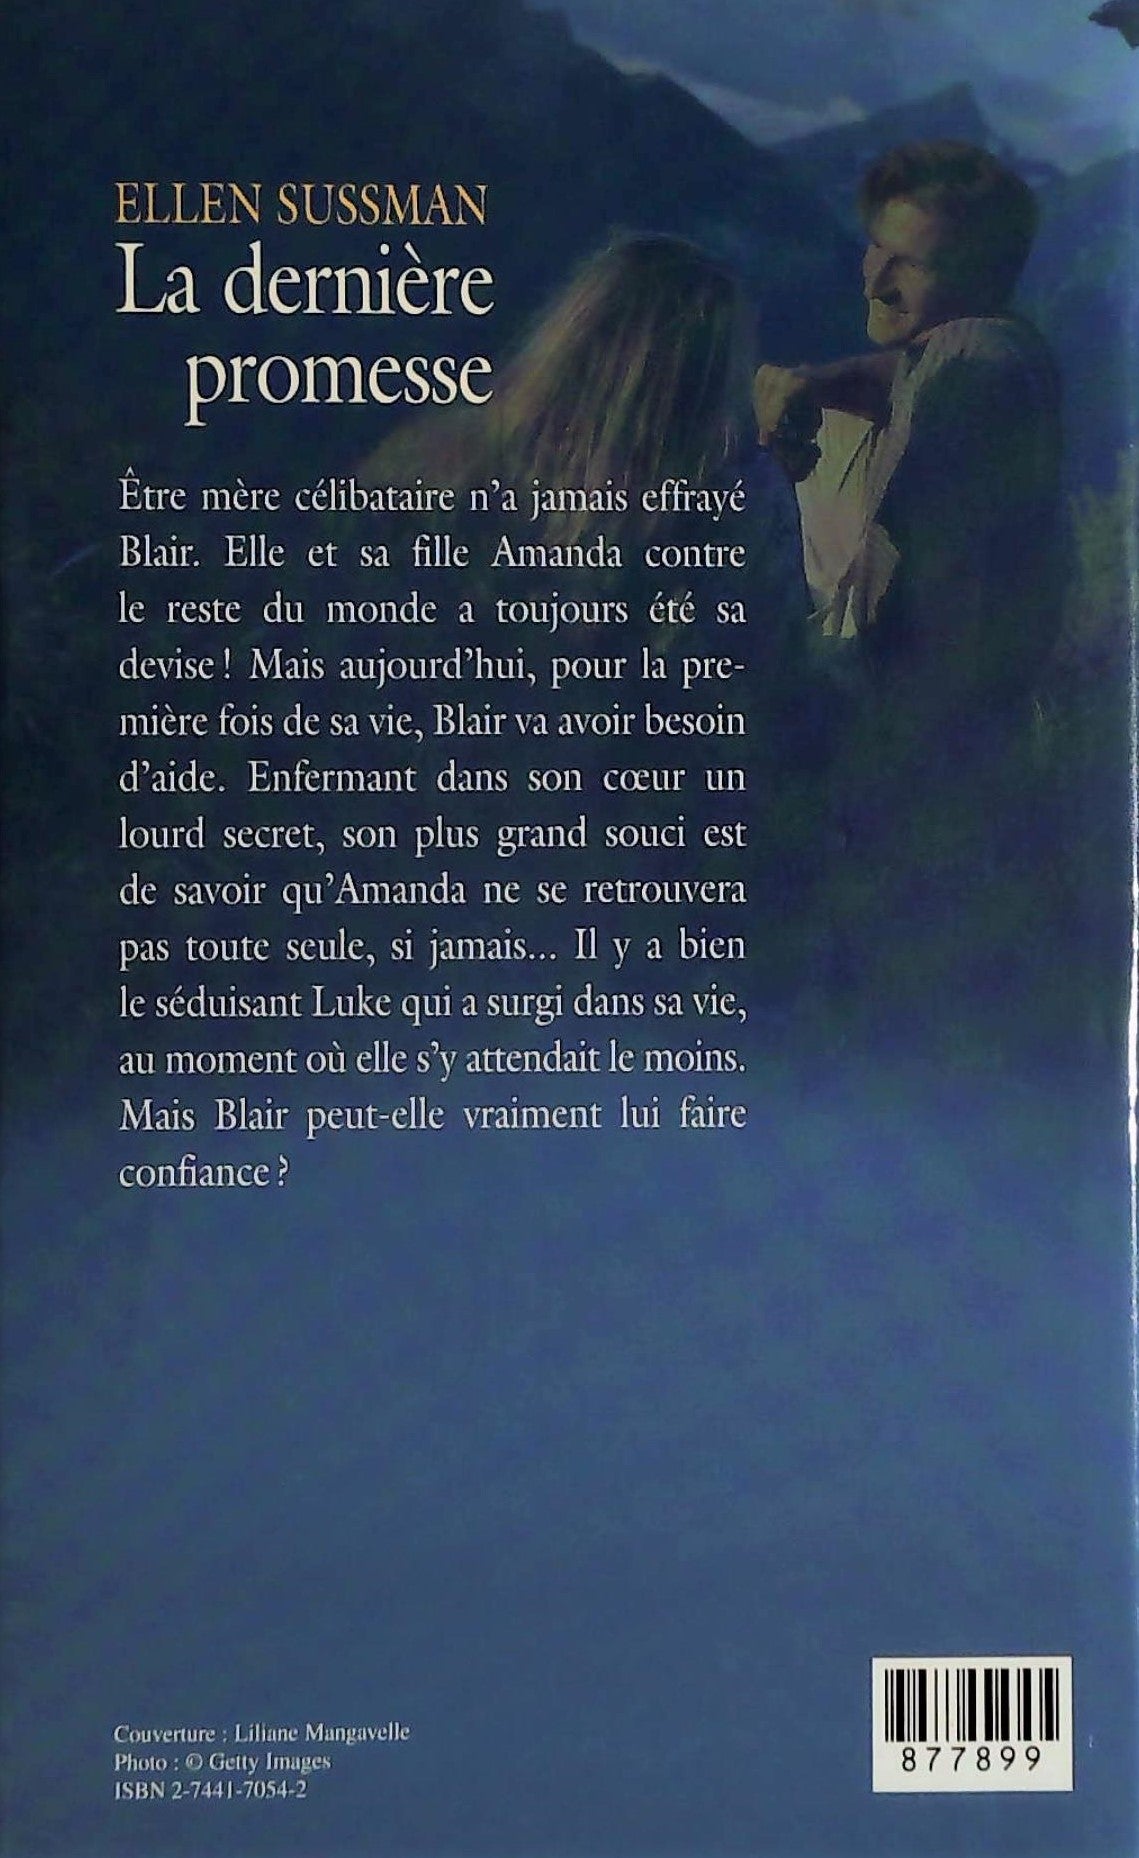 Roman Passionnément : La dernière promesse (Ellen Sussman)